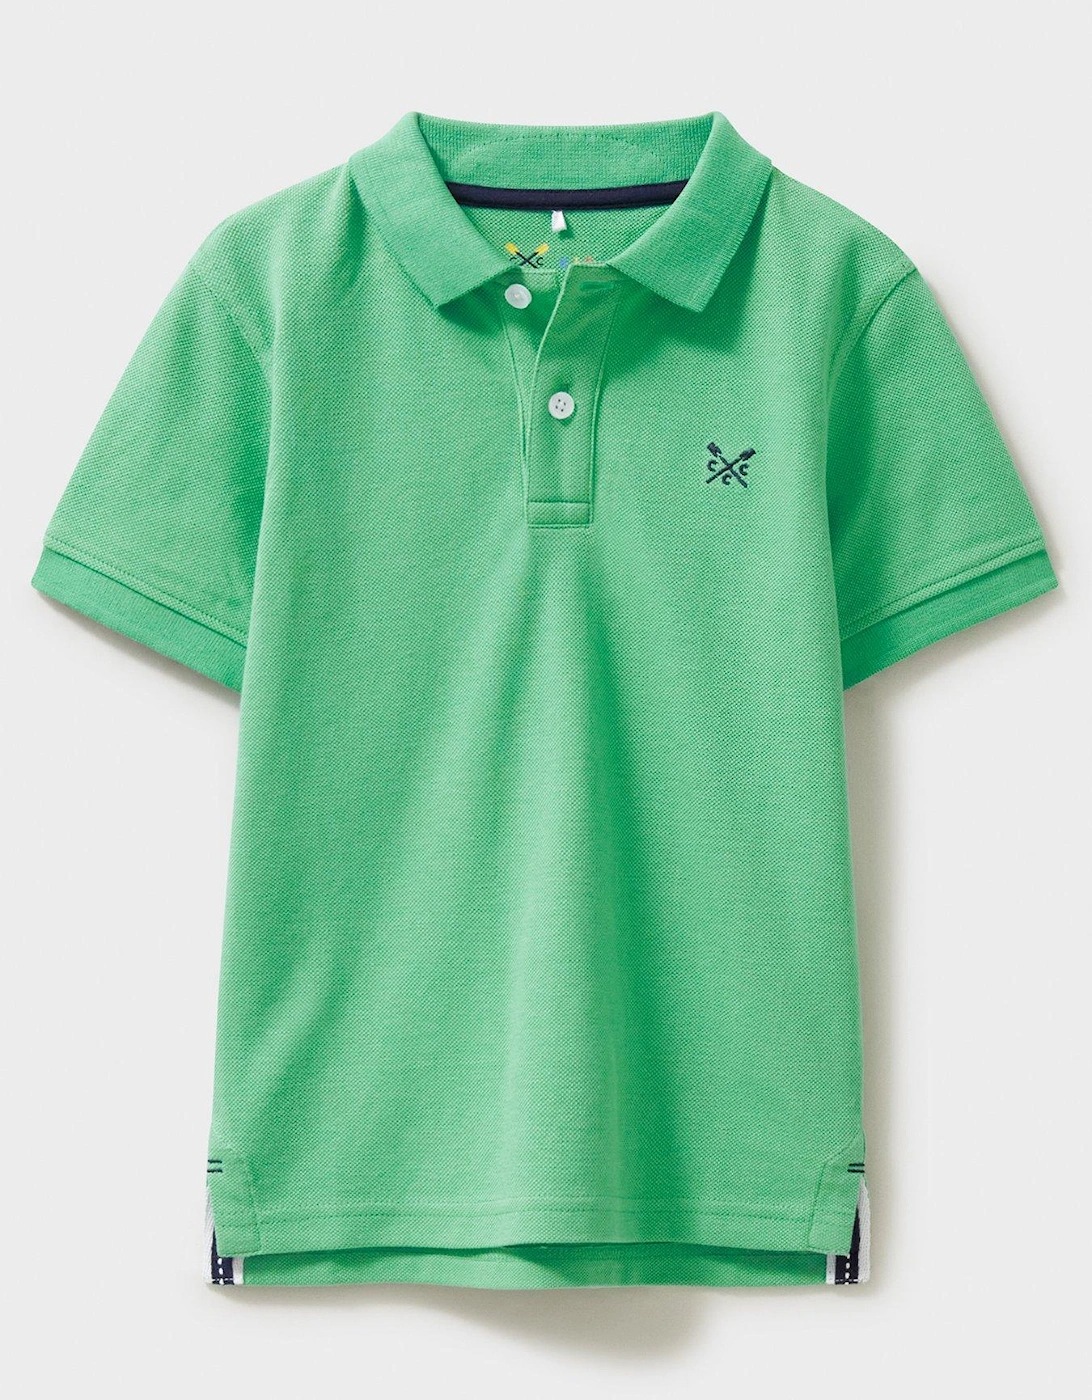 Boys Classic Pique Short Sleeve Polo - Green, 2 of 1